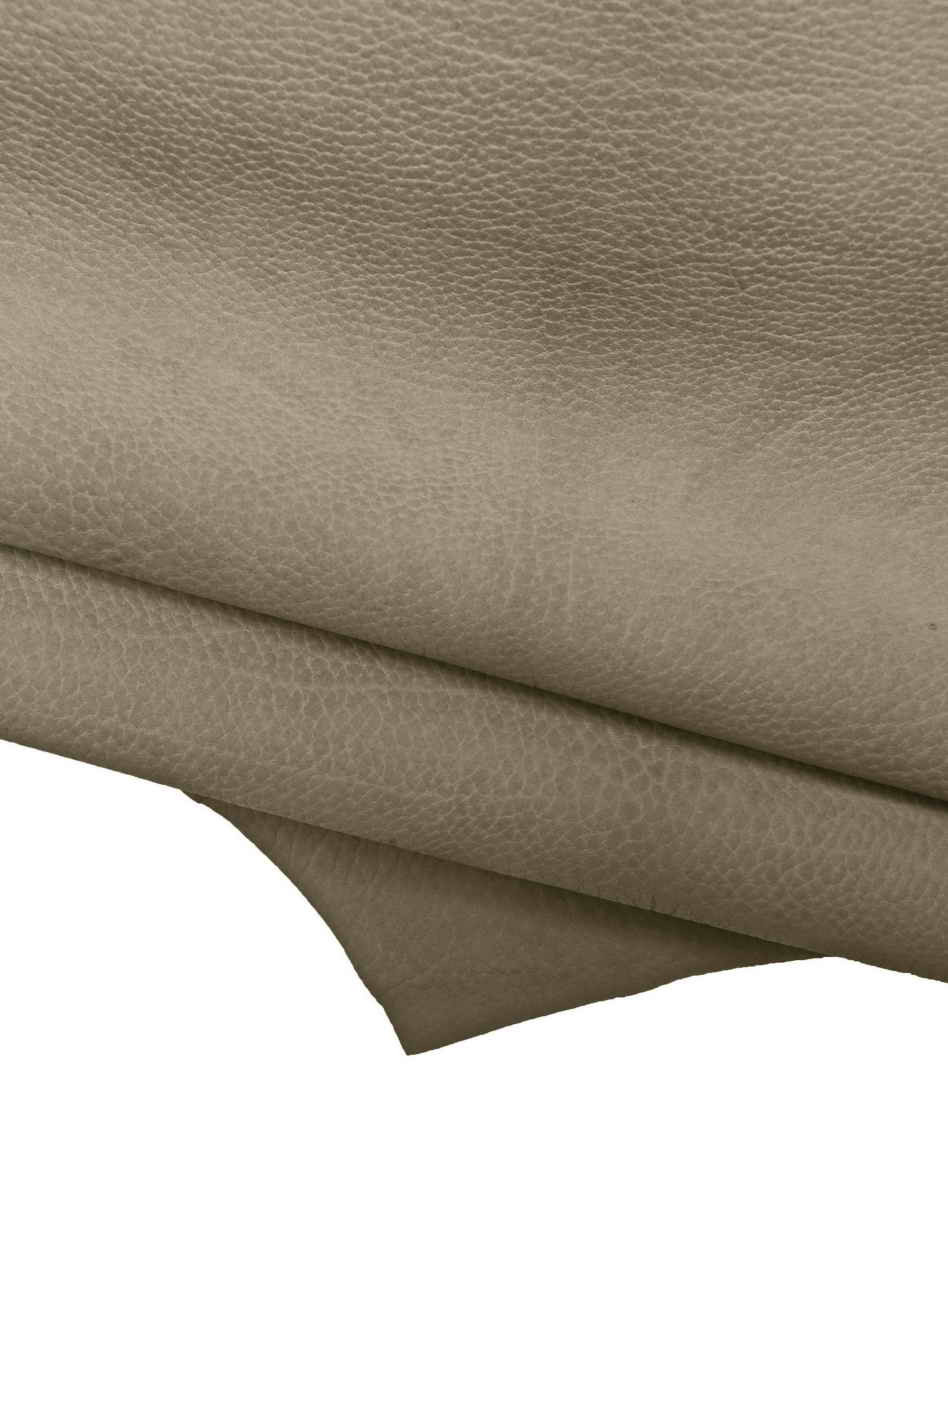 Pewter Metallic Natural Grain Cowhide Leather Skins Genuine